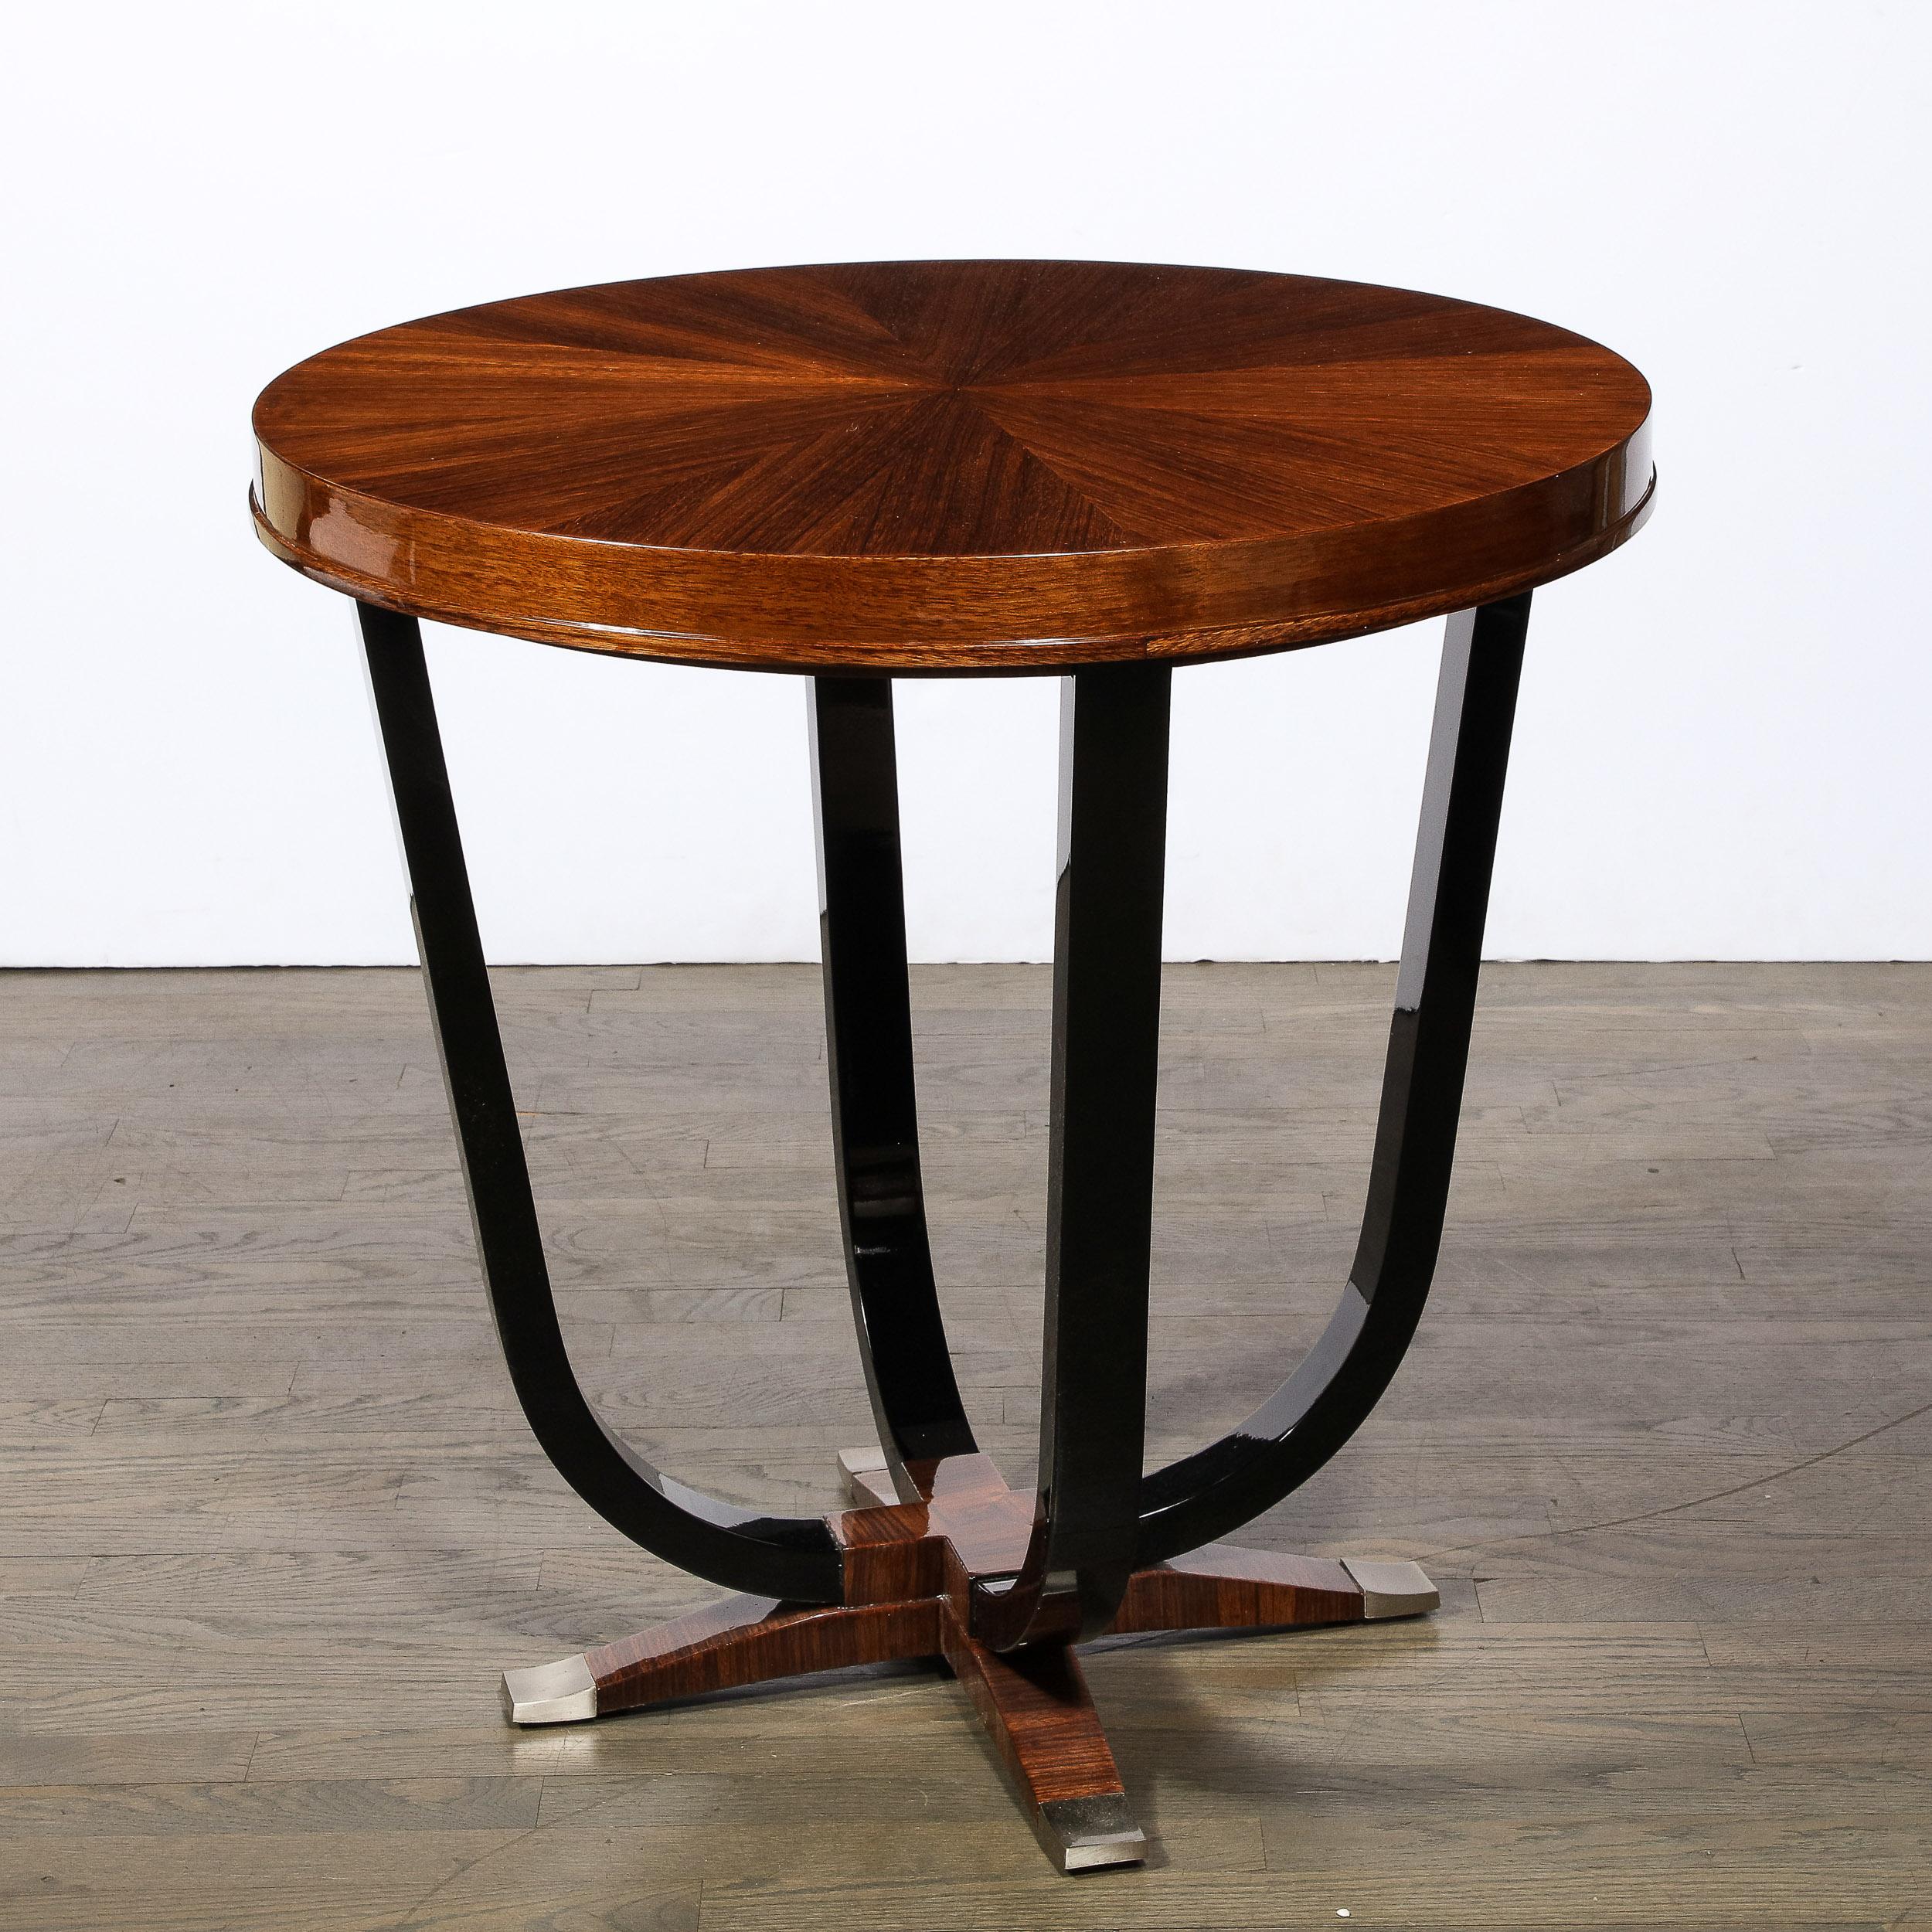 Dieser atemberaubende Art Deco Gueridon Tisch wurde um 1935 in Frankreich hergestellt. Er verfügt über einen vierzackigen Sockel aus buchstabiertem Nussbaumholz, der an den Enden mit Säbeln aus gebürstetem Nickel versehen ist. Vier